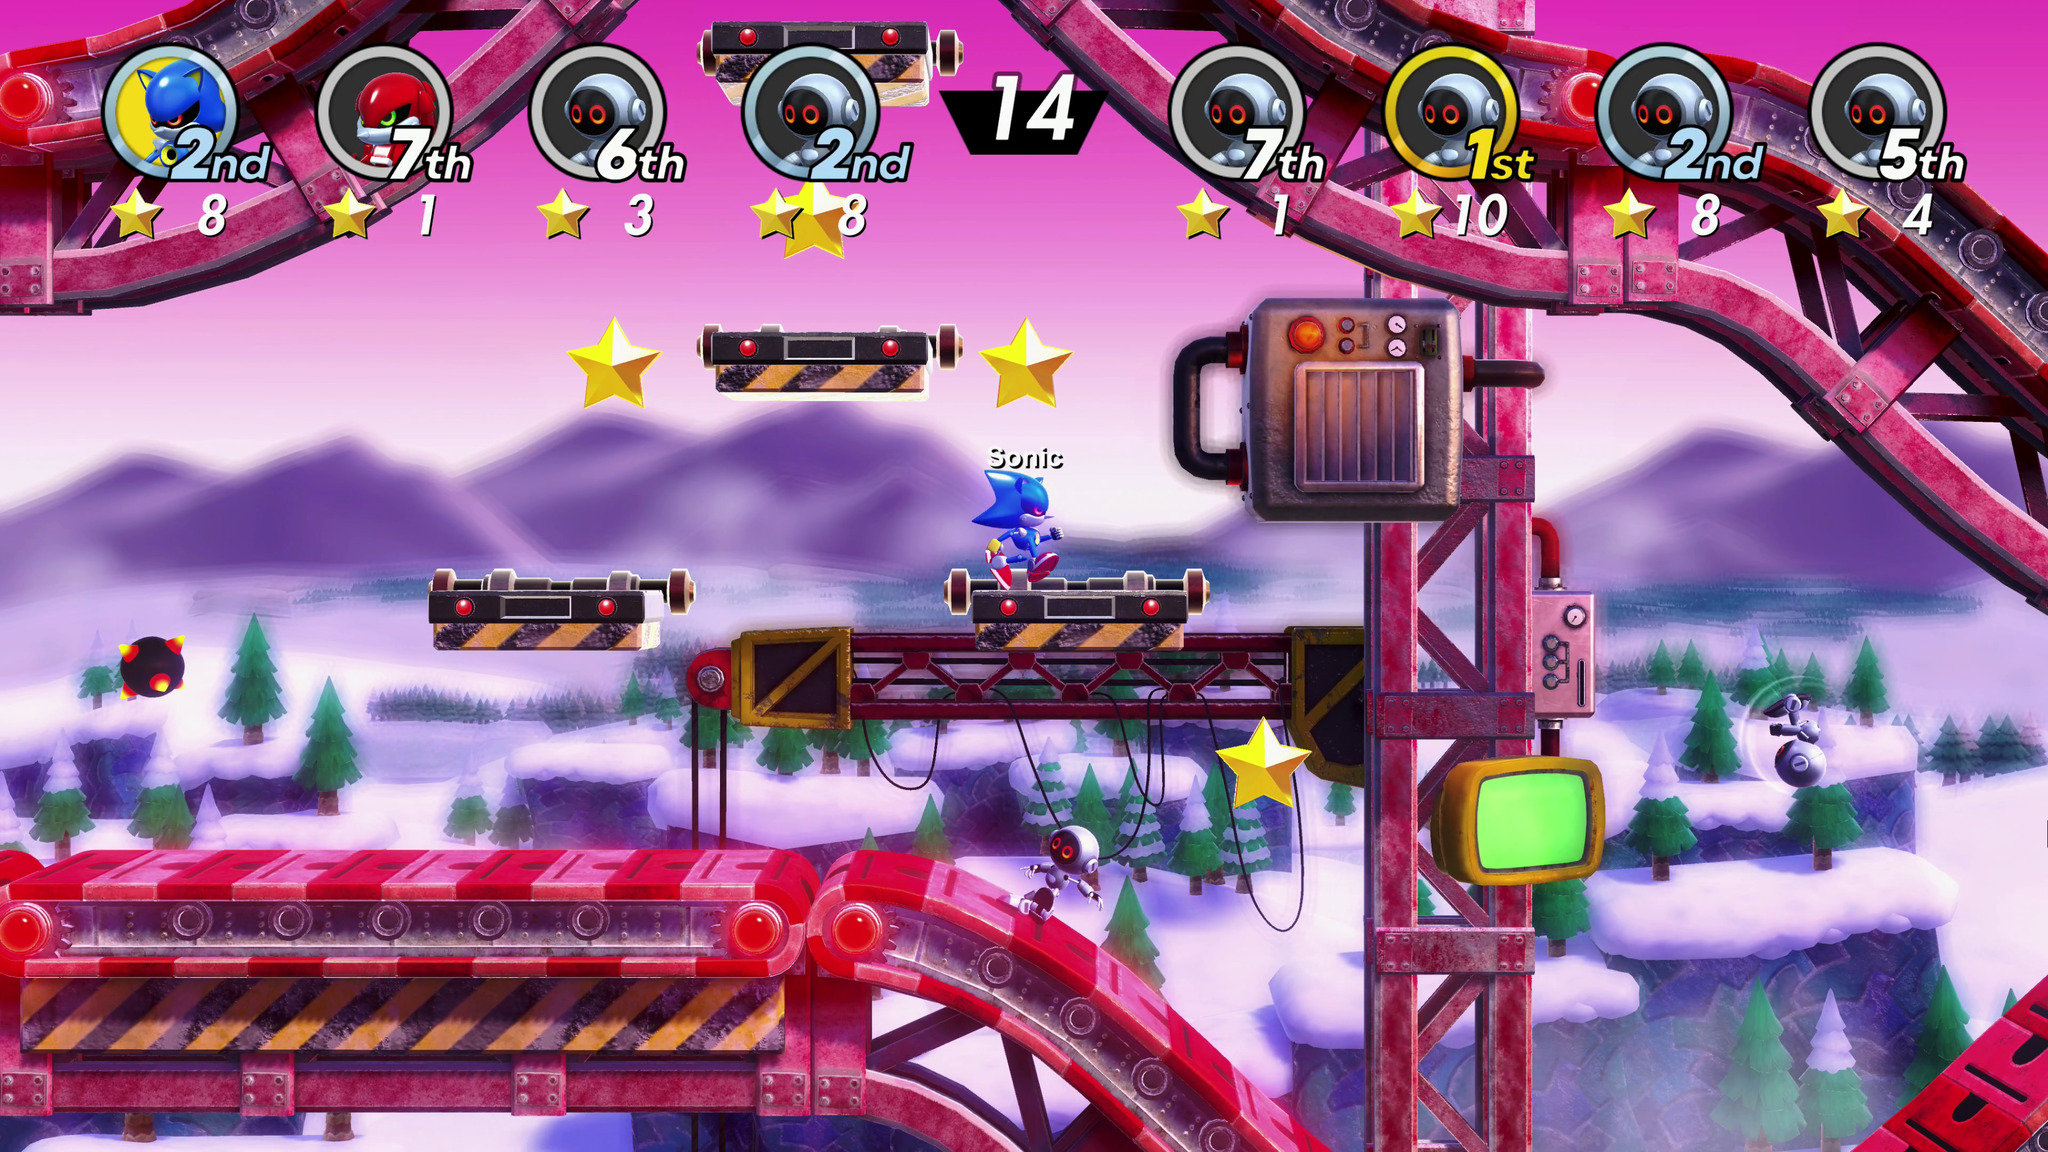 Game Sonic Superstars - PS5 em Promoção na Americanas